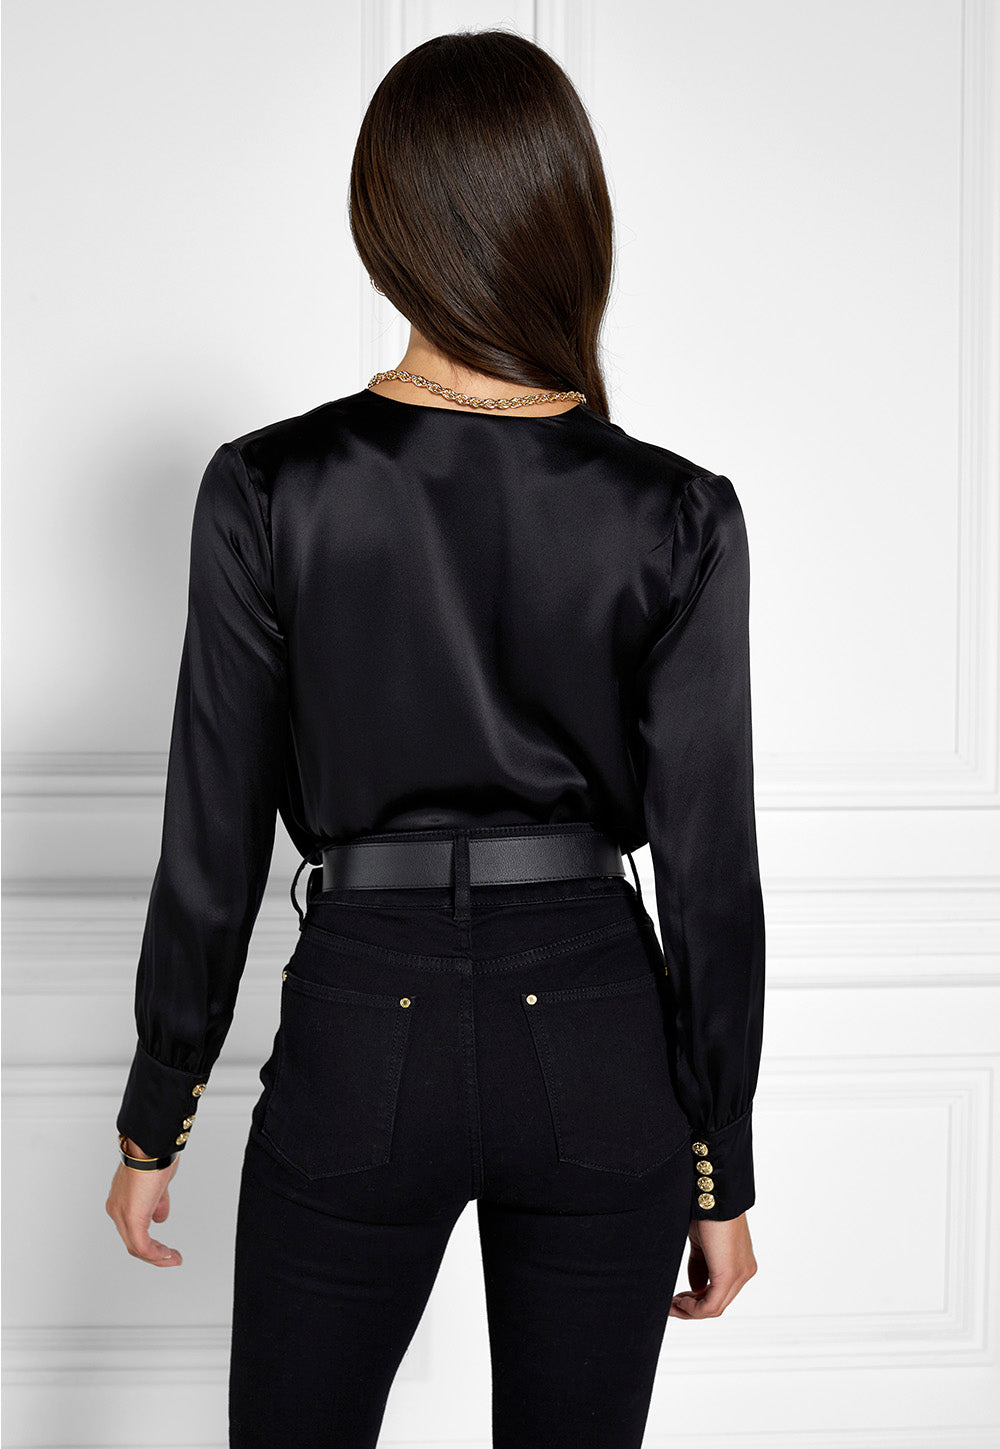 Silk Bodysuit - Black sold by Angel Divine